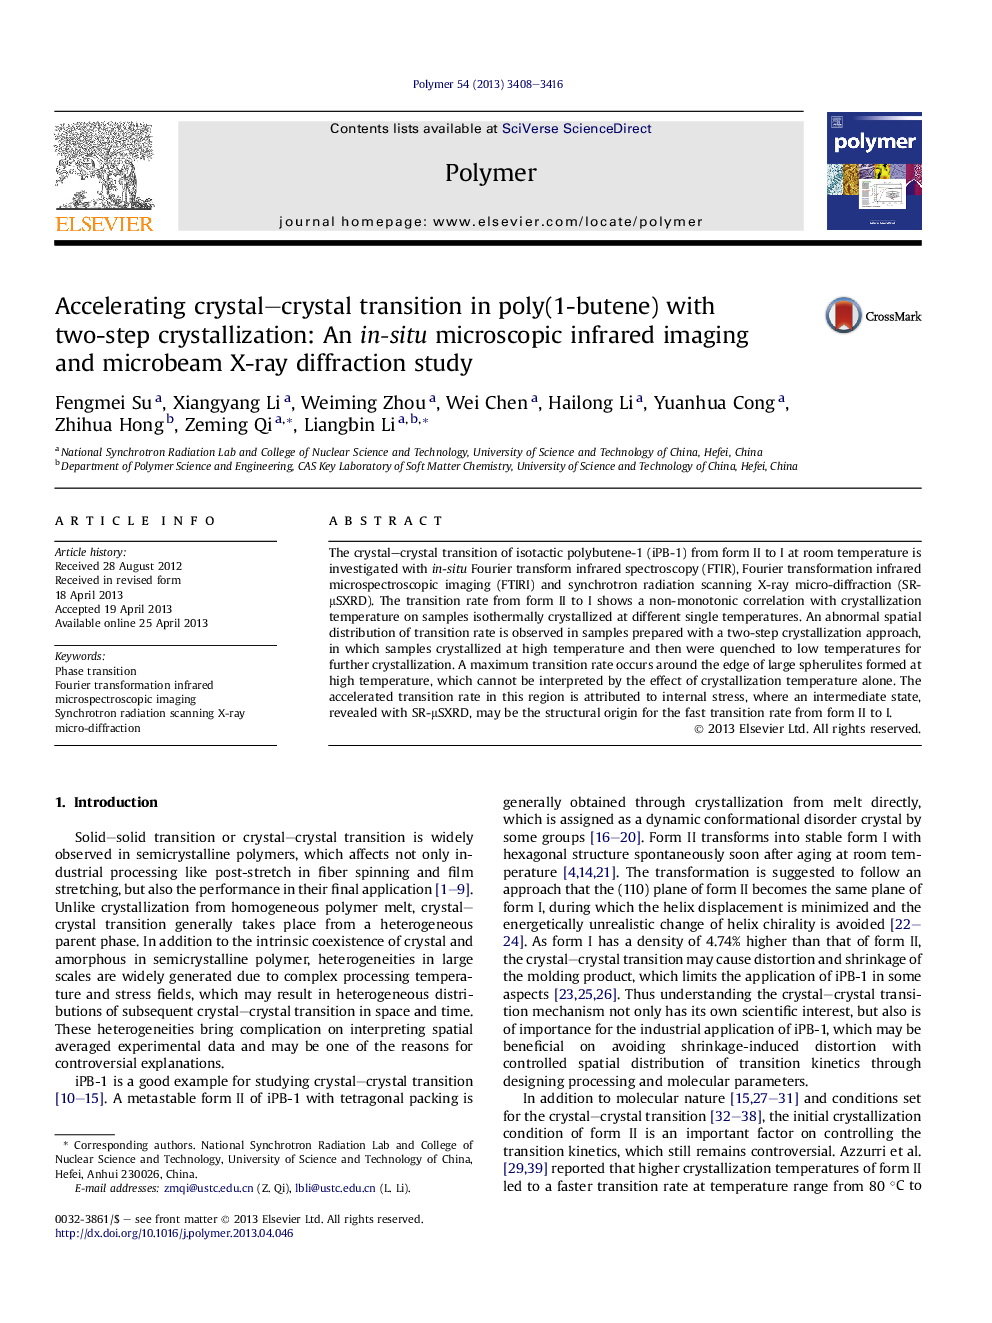 تسریع در انتقال کریستال بلوری در پلی (1-بوتن) با کریستال شدن دو مرحلهای: یک تصویربرداری مادون قرمز میکروسکوپی موضعی و مطالعه پراش اشعه ایکس میکروبی 